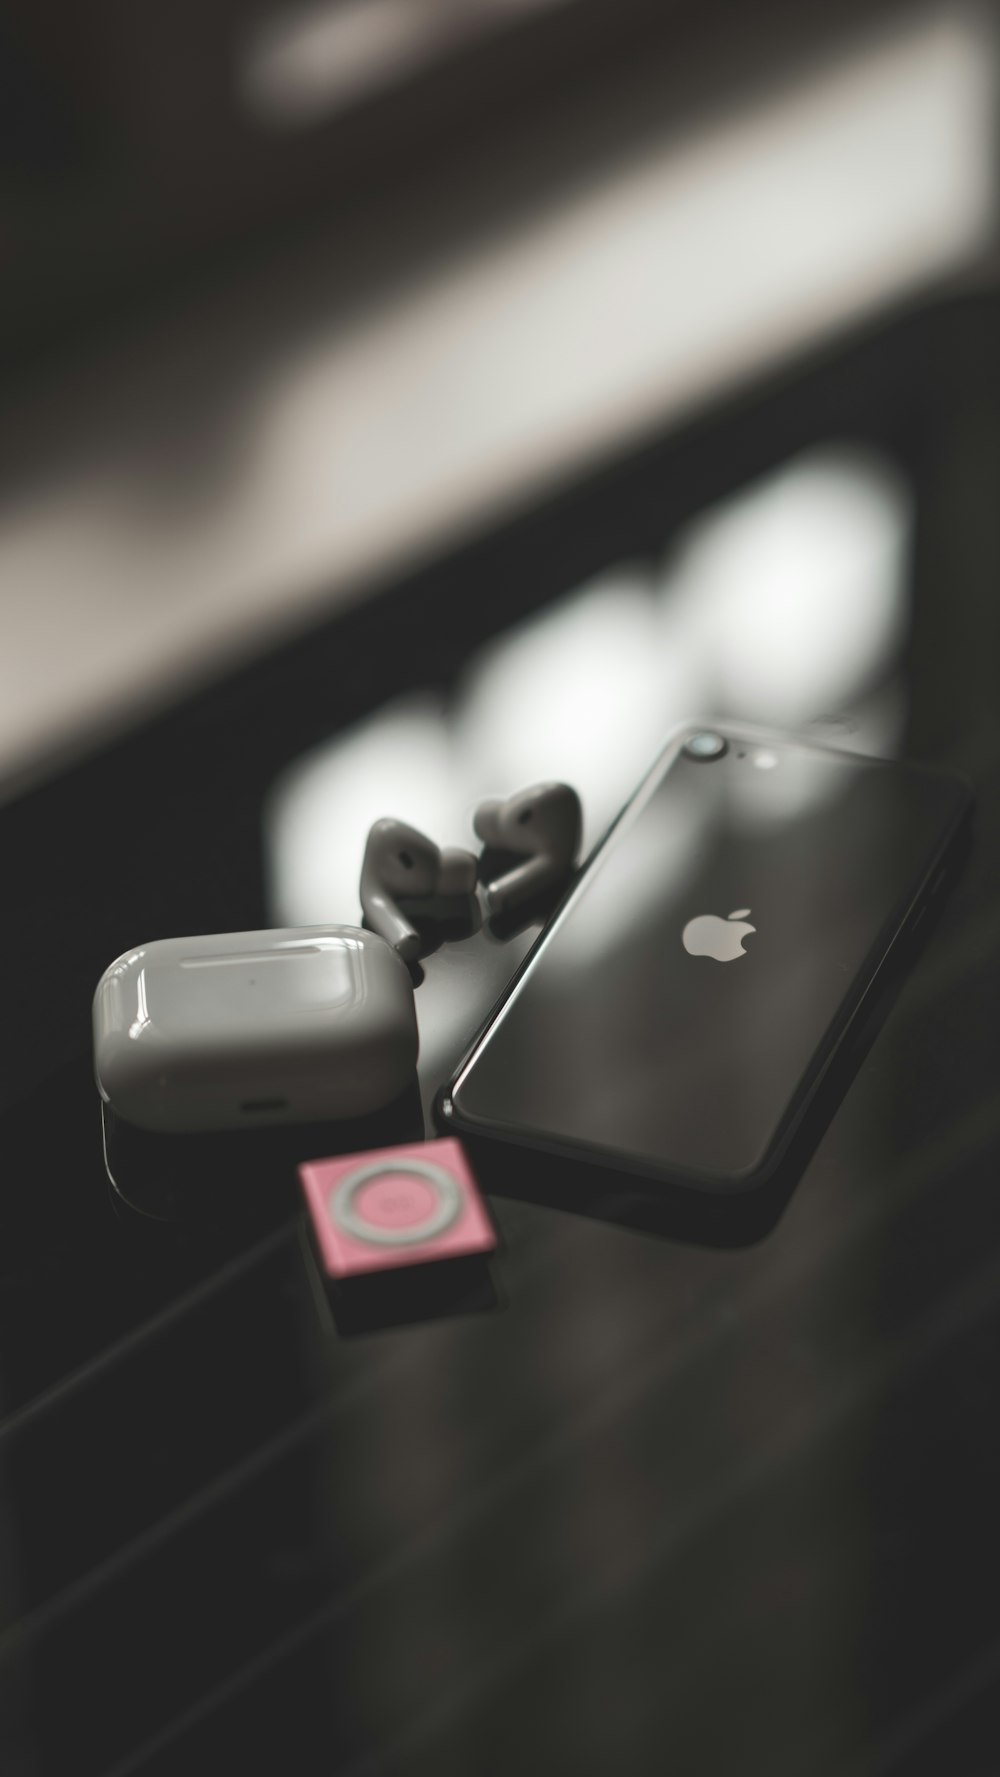 iPhone 7 nero con auricolari Beat by Dr Dre neri e rossi